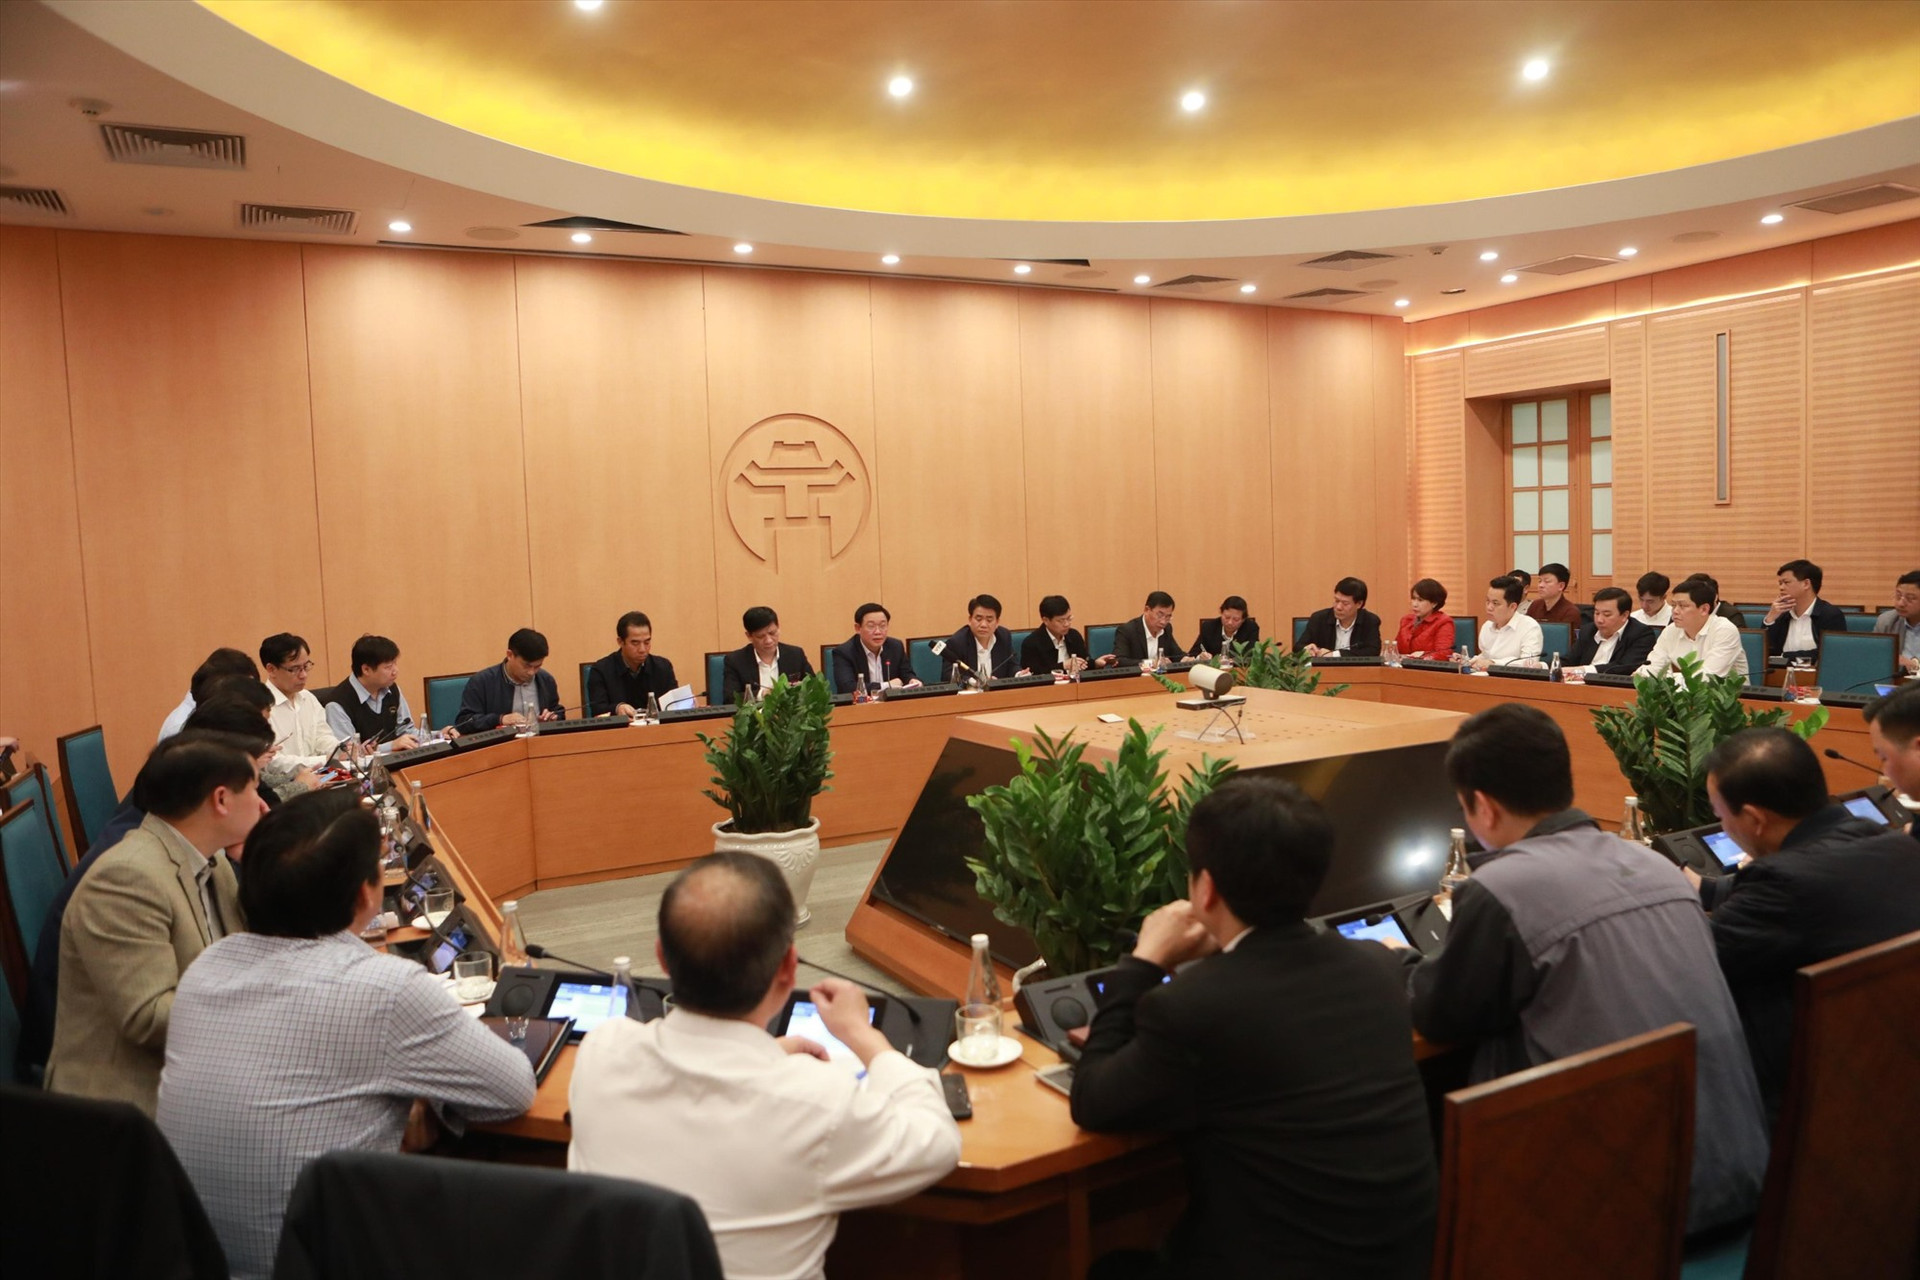 Cuộc họp khẩn của lãnh đạo thành phố Hà Nội đêm 6.3. Ảnh: VGP/Thiện Tâm